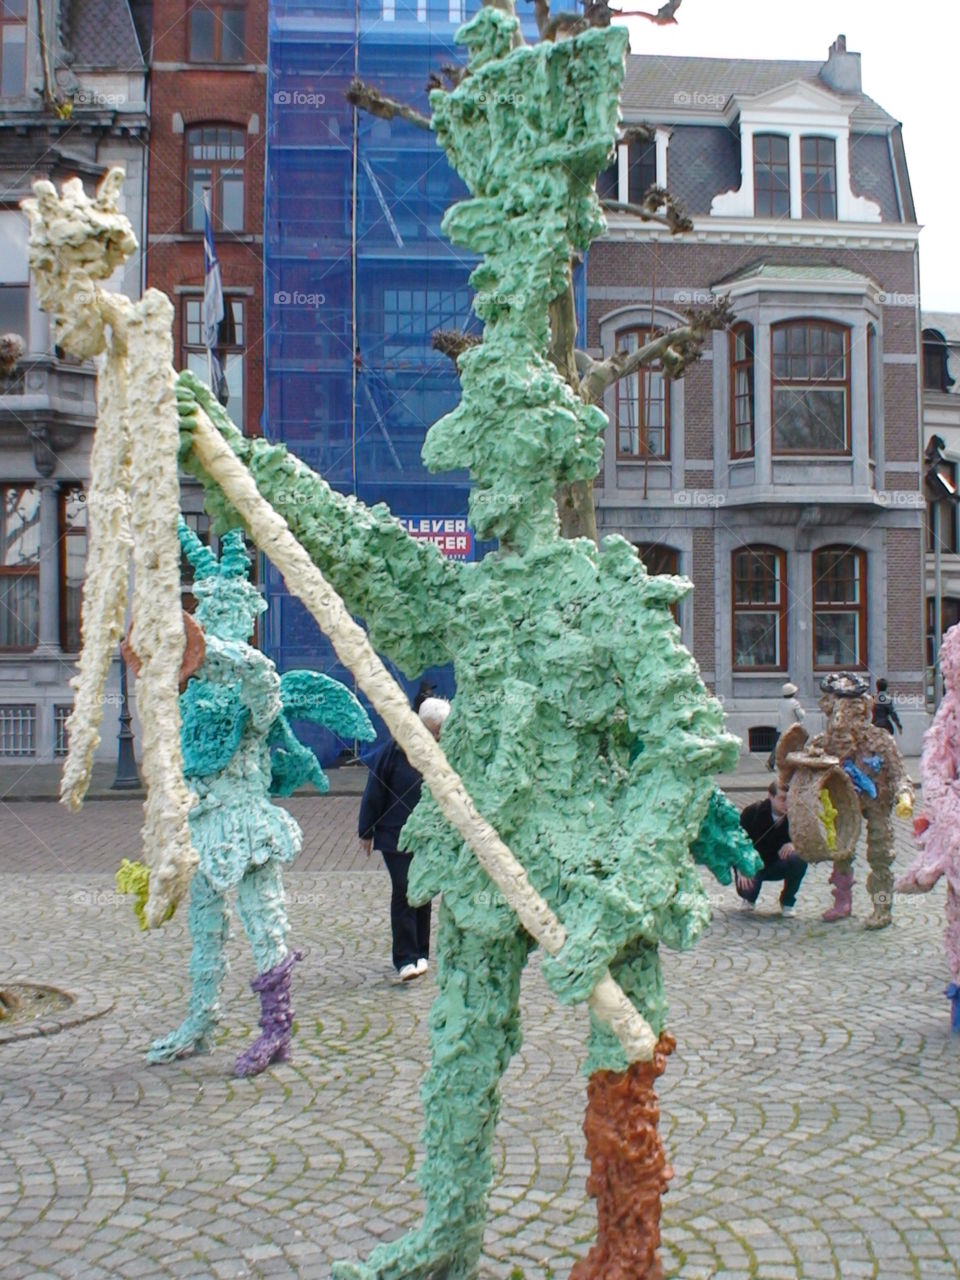 green sculpture